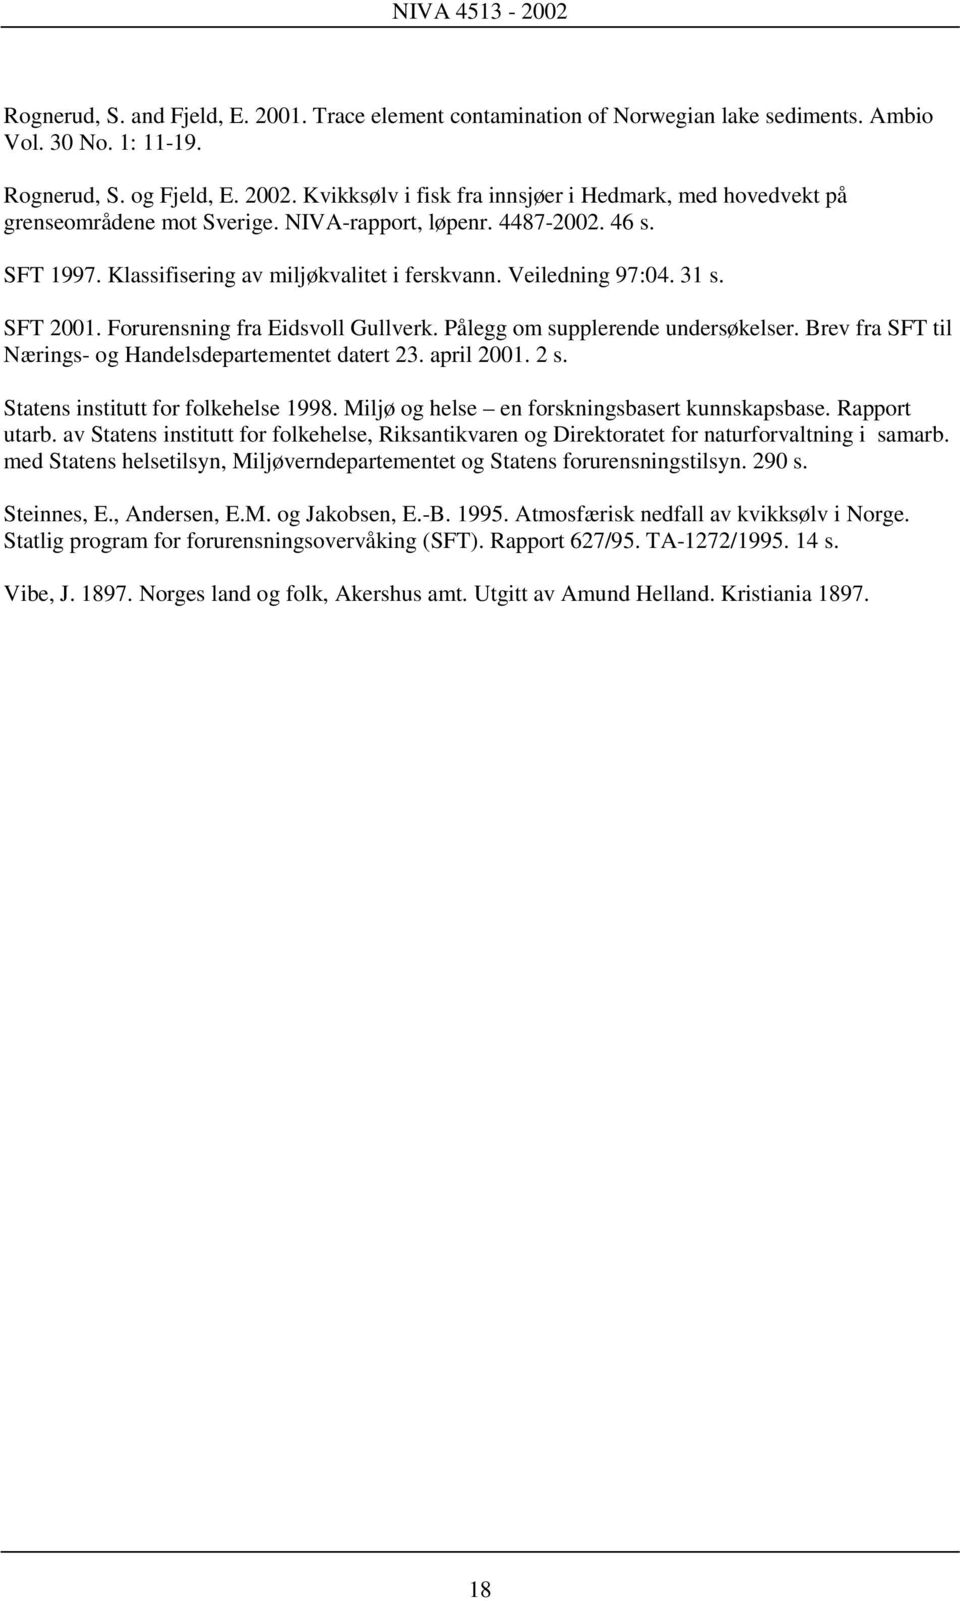 31 s. SFT 2001. Forurensning fra Eidsvoll Gullverk. Pålegg om supplerende undersøkelser. Brev fra SFT til Nærings- og Handelsdepartementet datert 23. april 2001. 2 s.